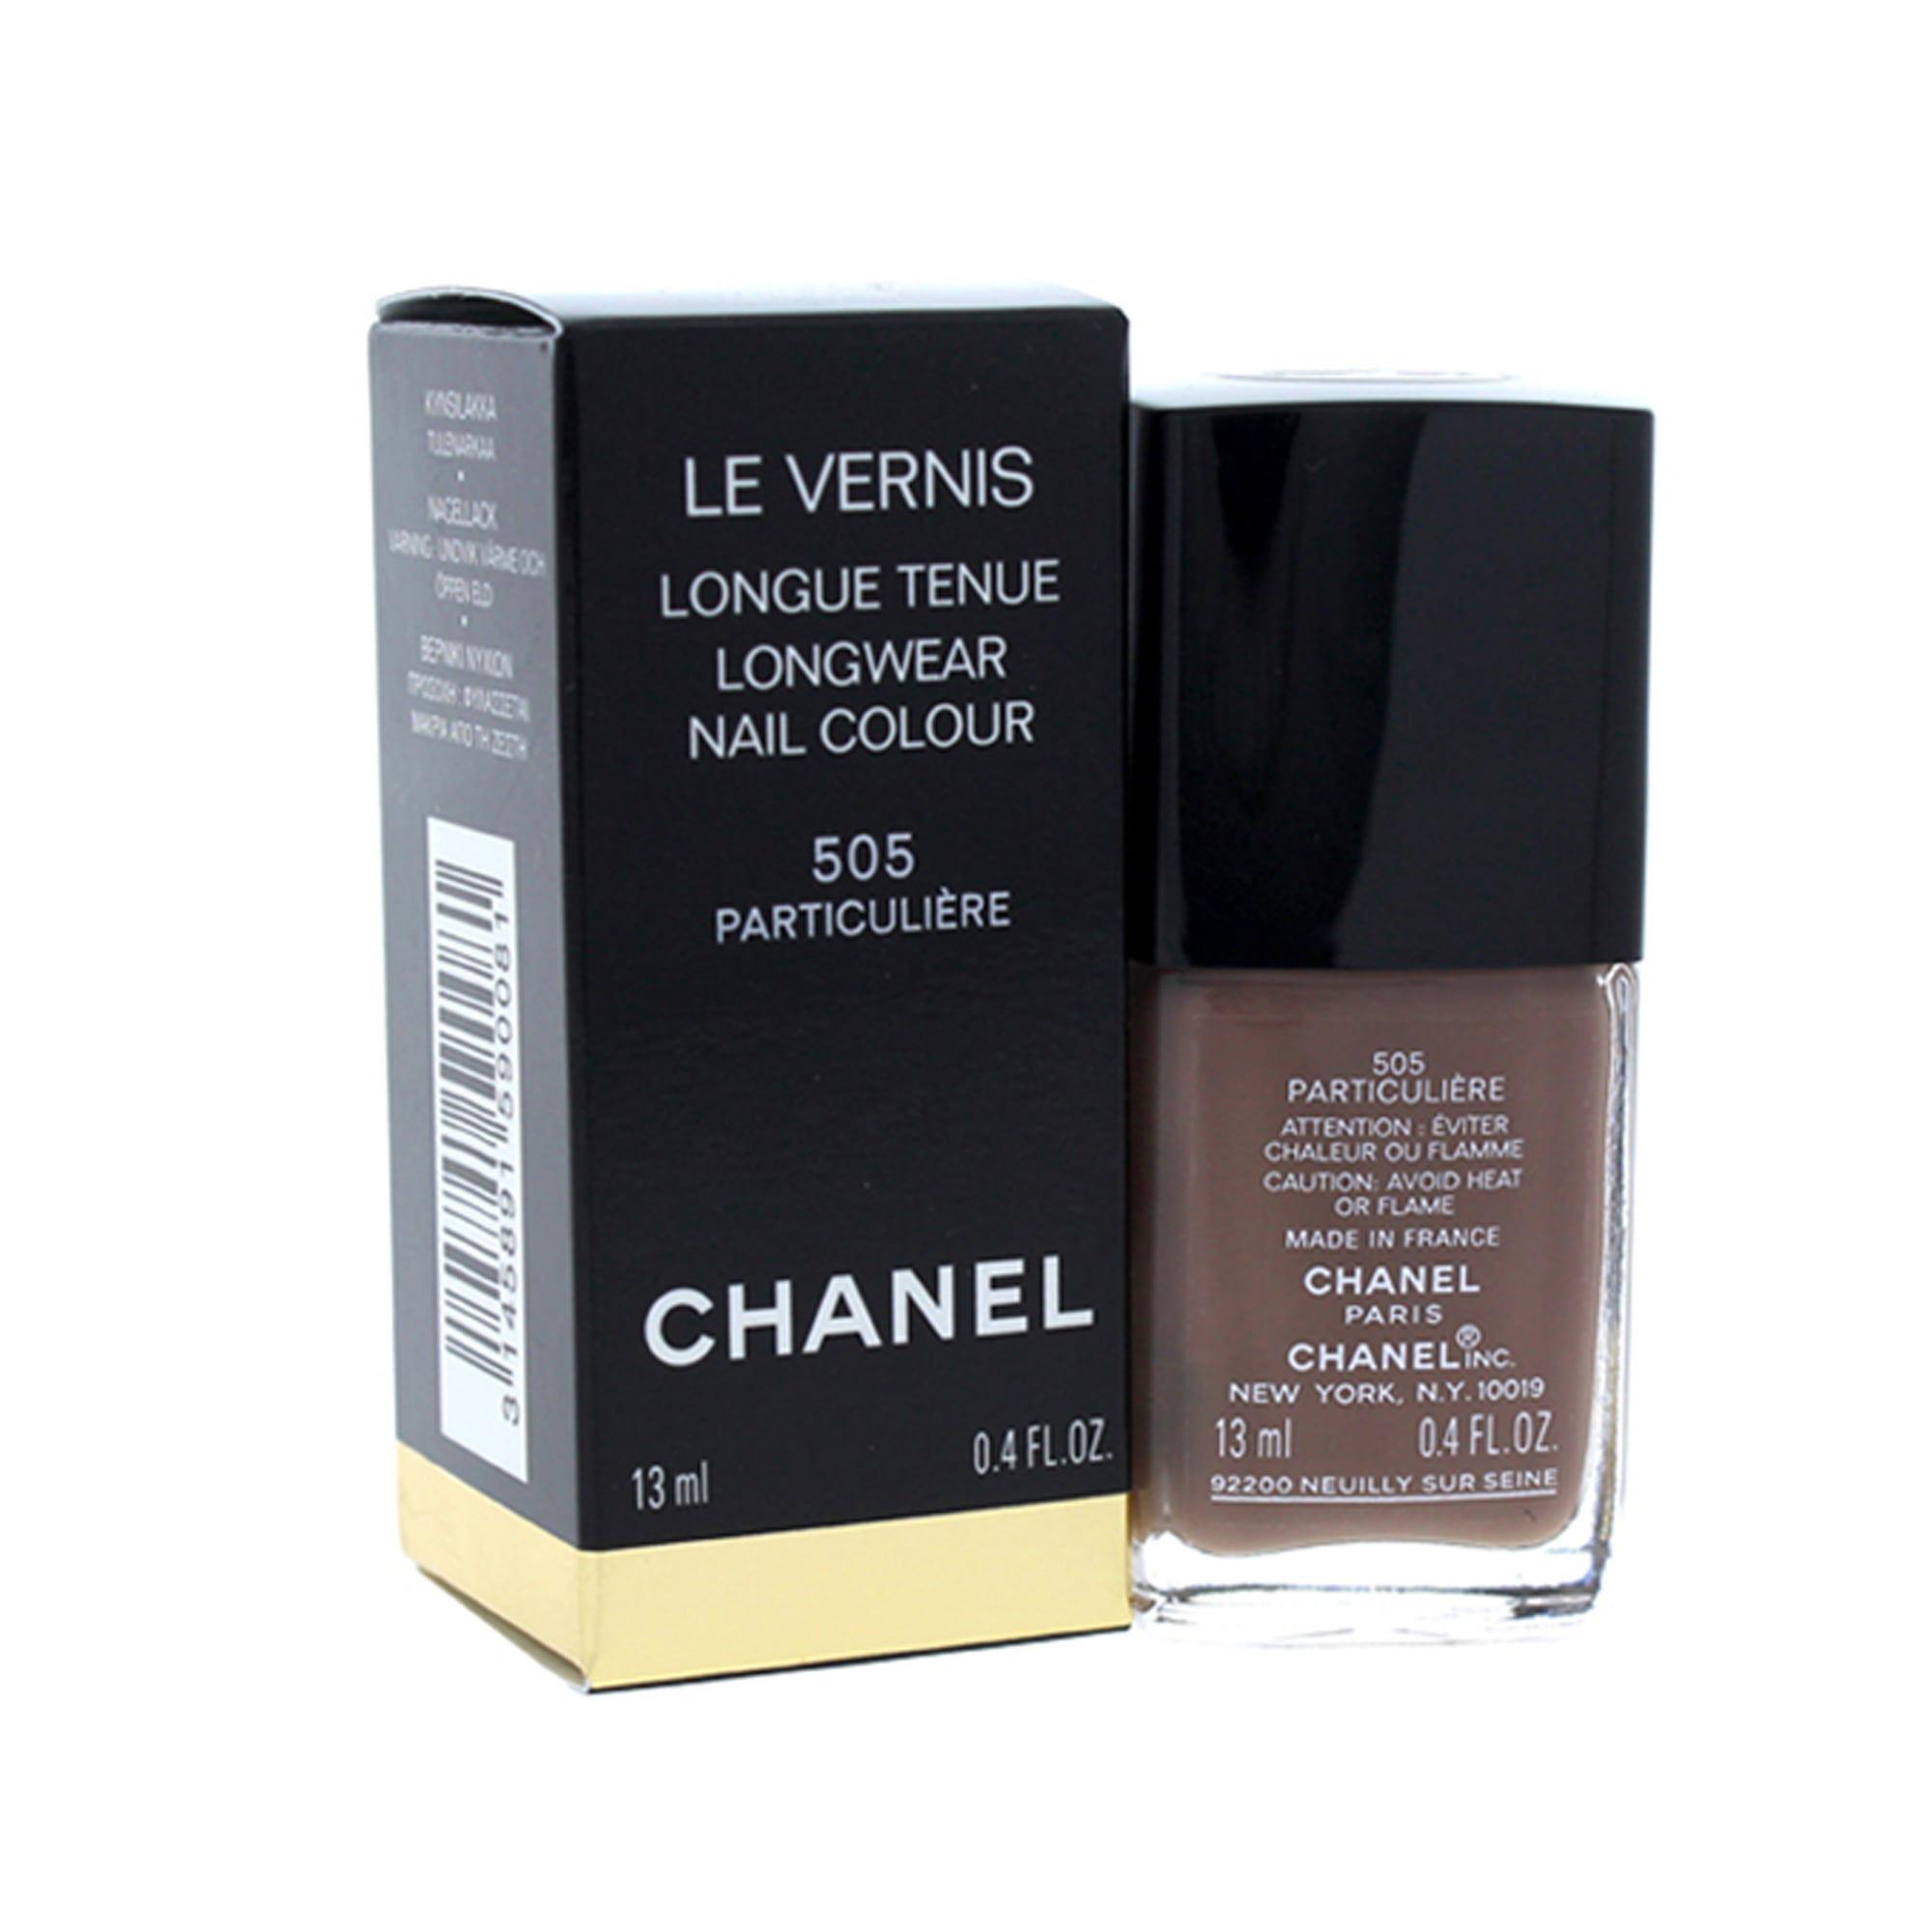 CHANEL - Chanel Le Vernis Longwear Nail Colour - 505 Particuliere 0.4 ...